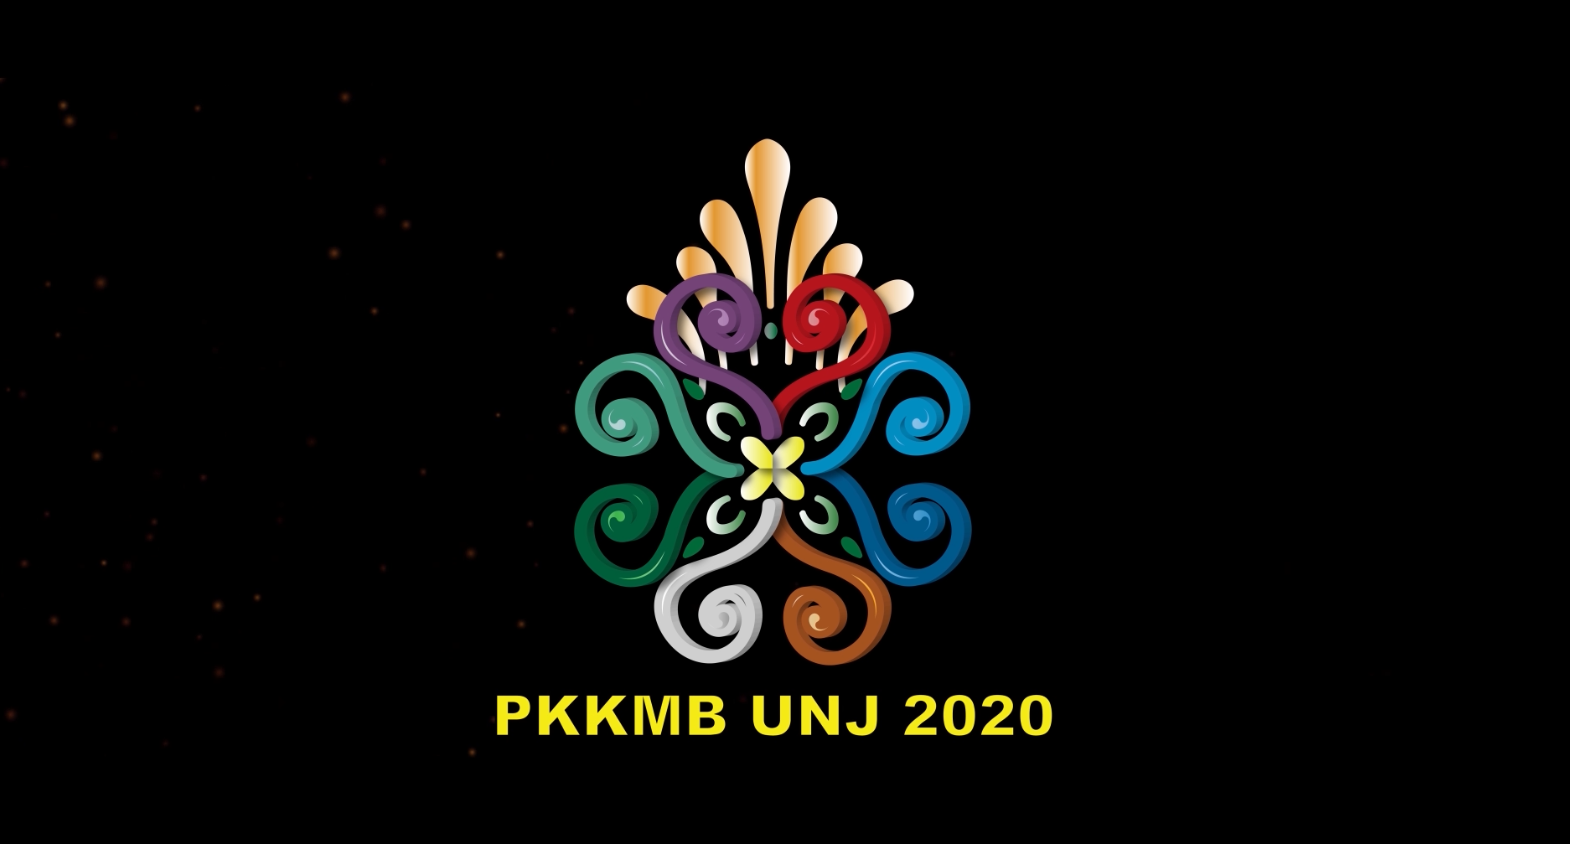 (Bahasa) Tautan untuk Pembukaan PKKMB UNJ 2020